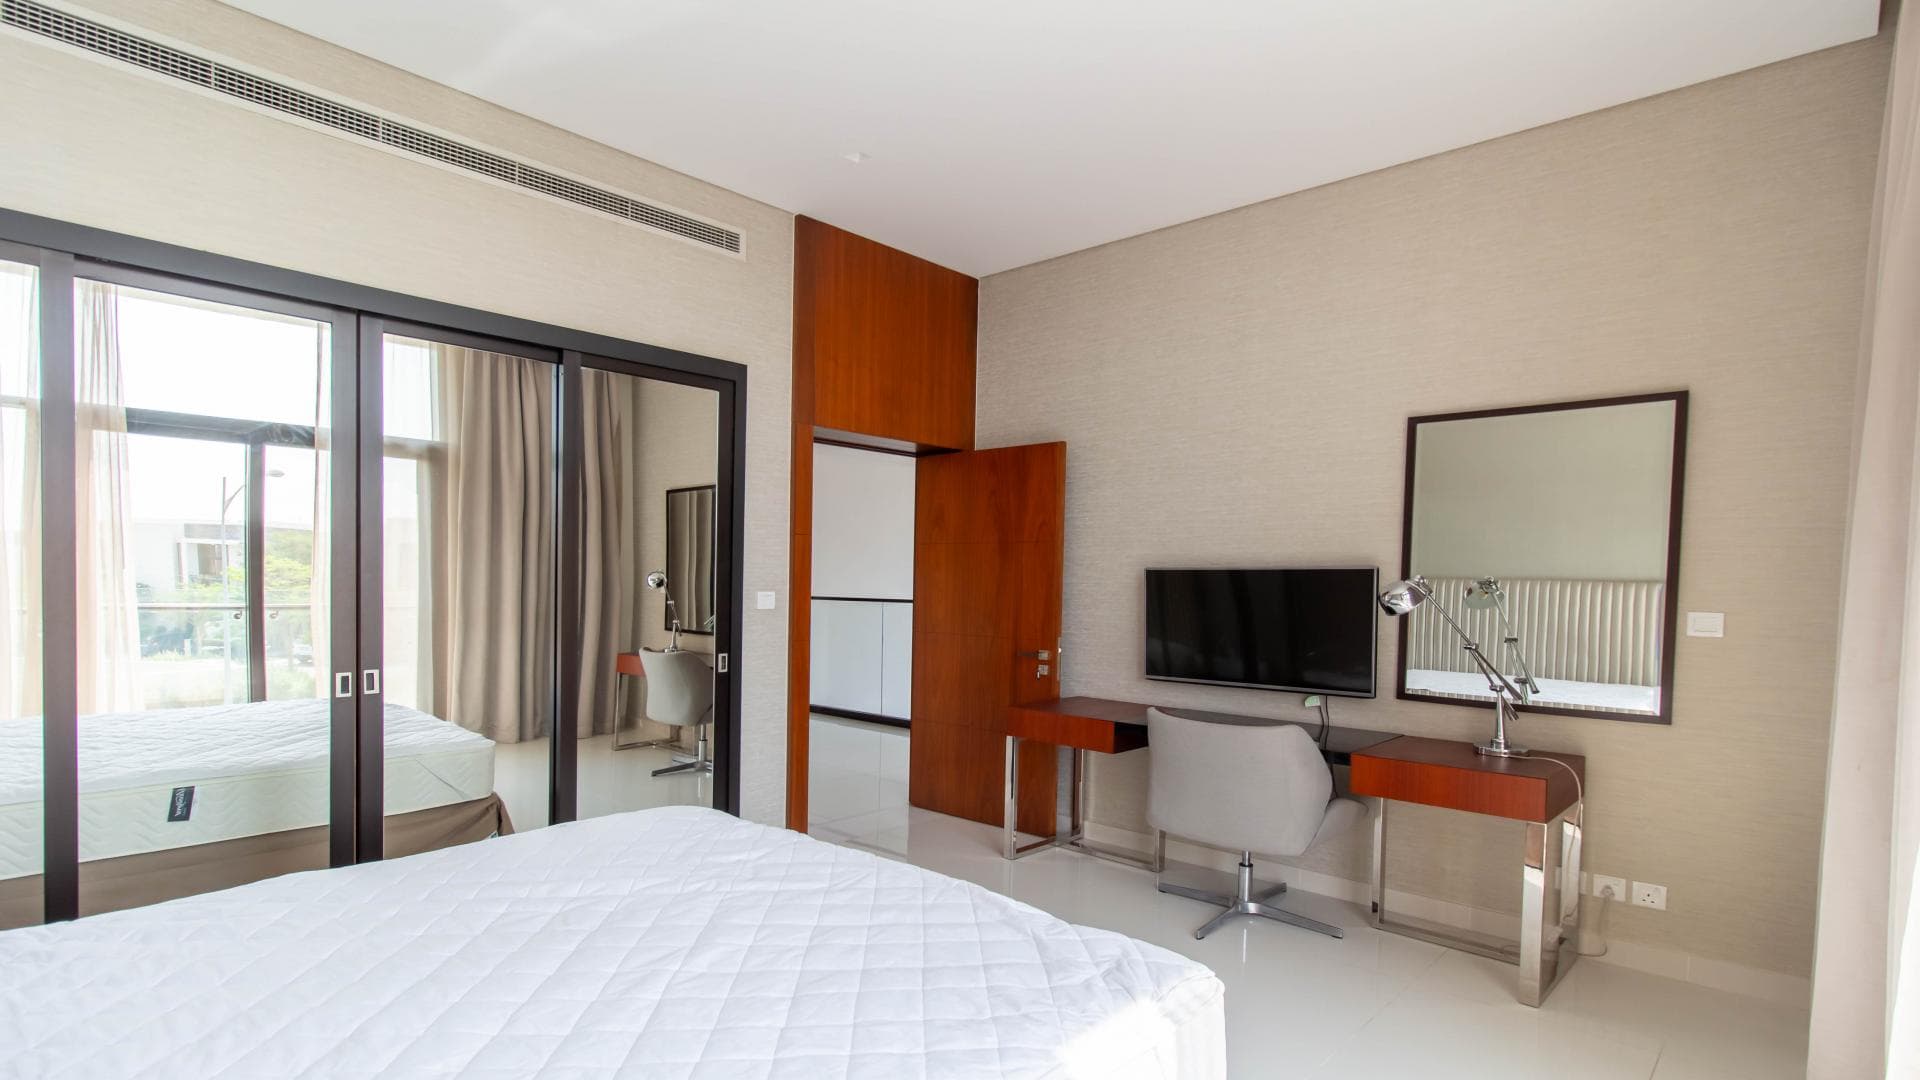 5 Bedroom Villa For Rent Tasameem Tower 1 Lp37850 1382387e18dc0f00.jpg